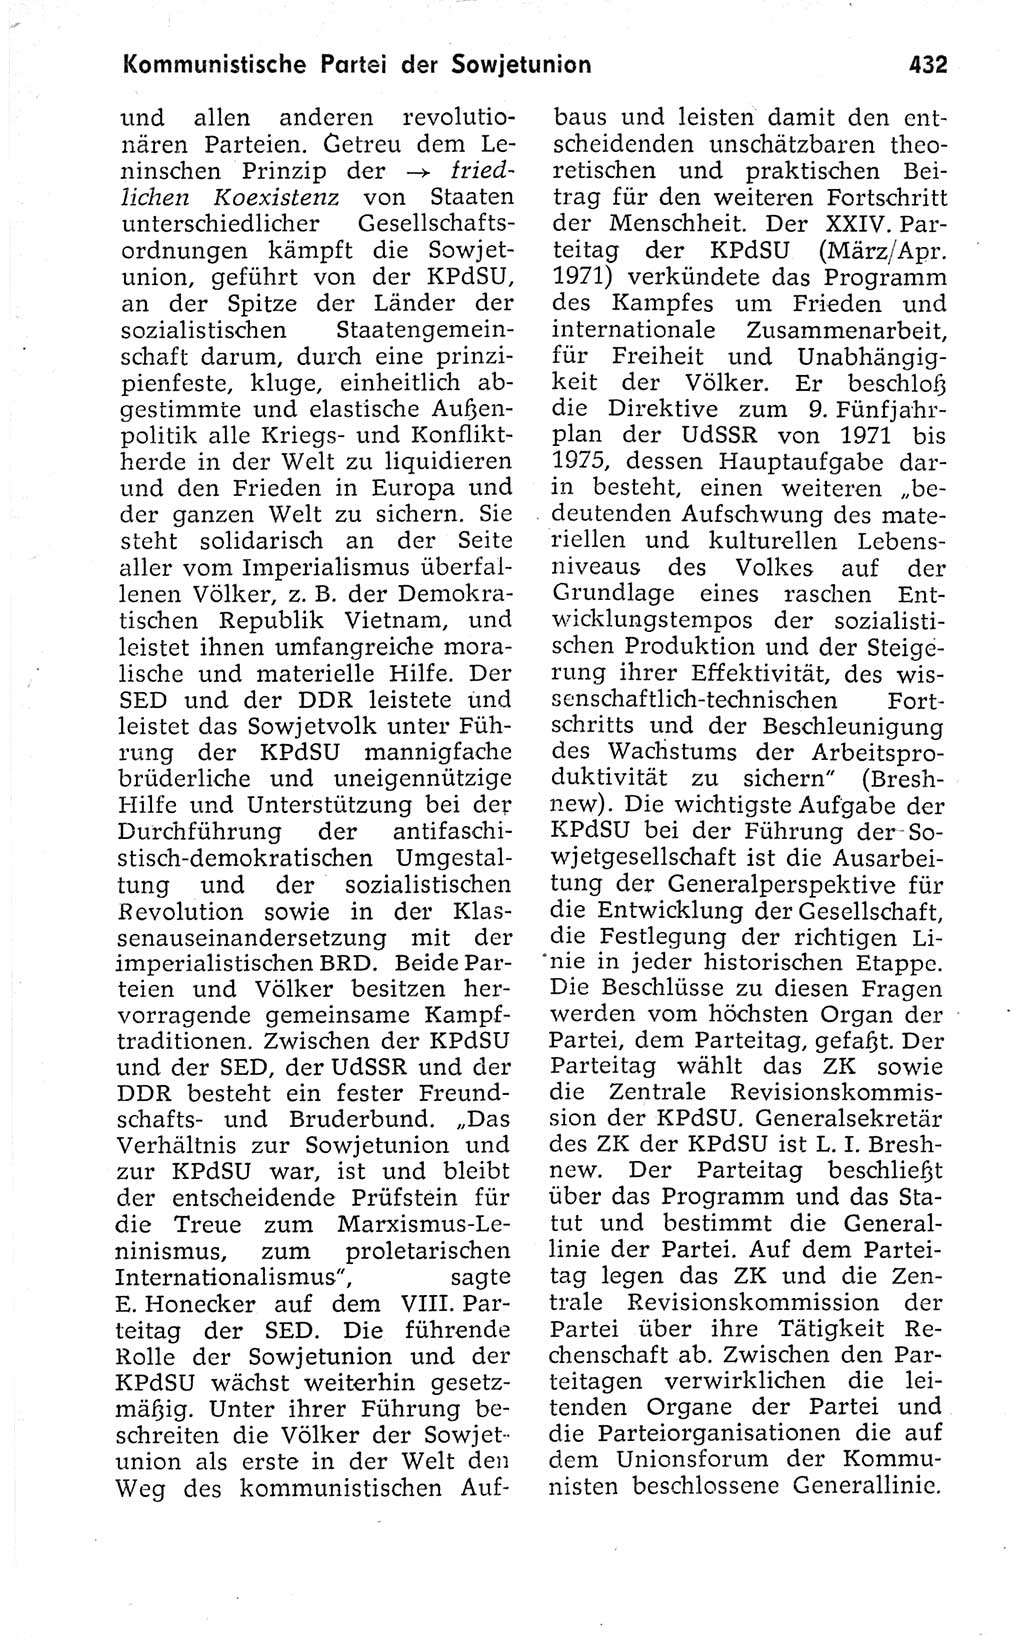 Kleines politisches Wörterbuch [Deutsche Demokratische Republik (DDR)] 1973, Seite 432 (Kl. pol. Wb. DDR 1973, S. 432)